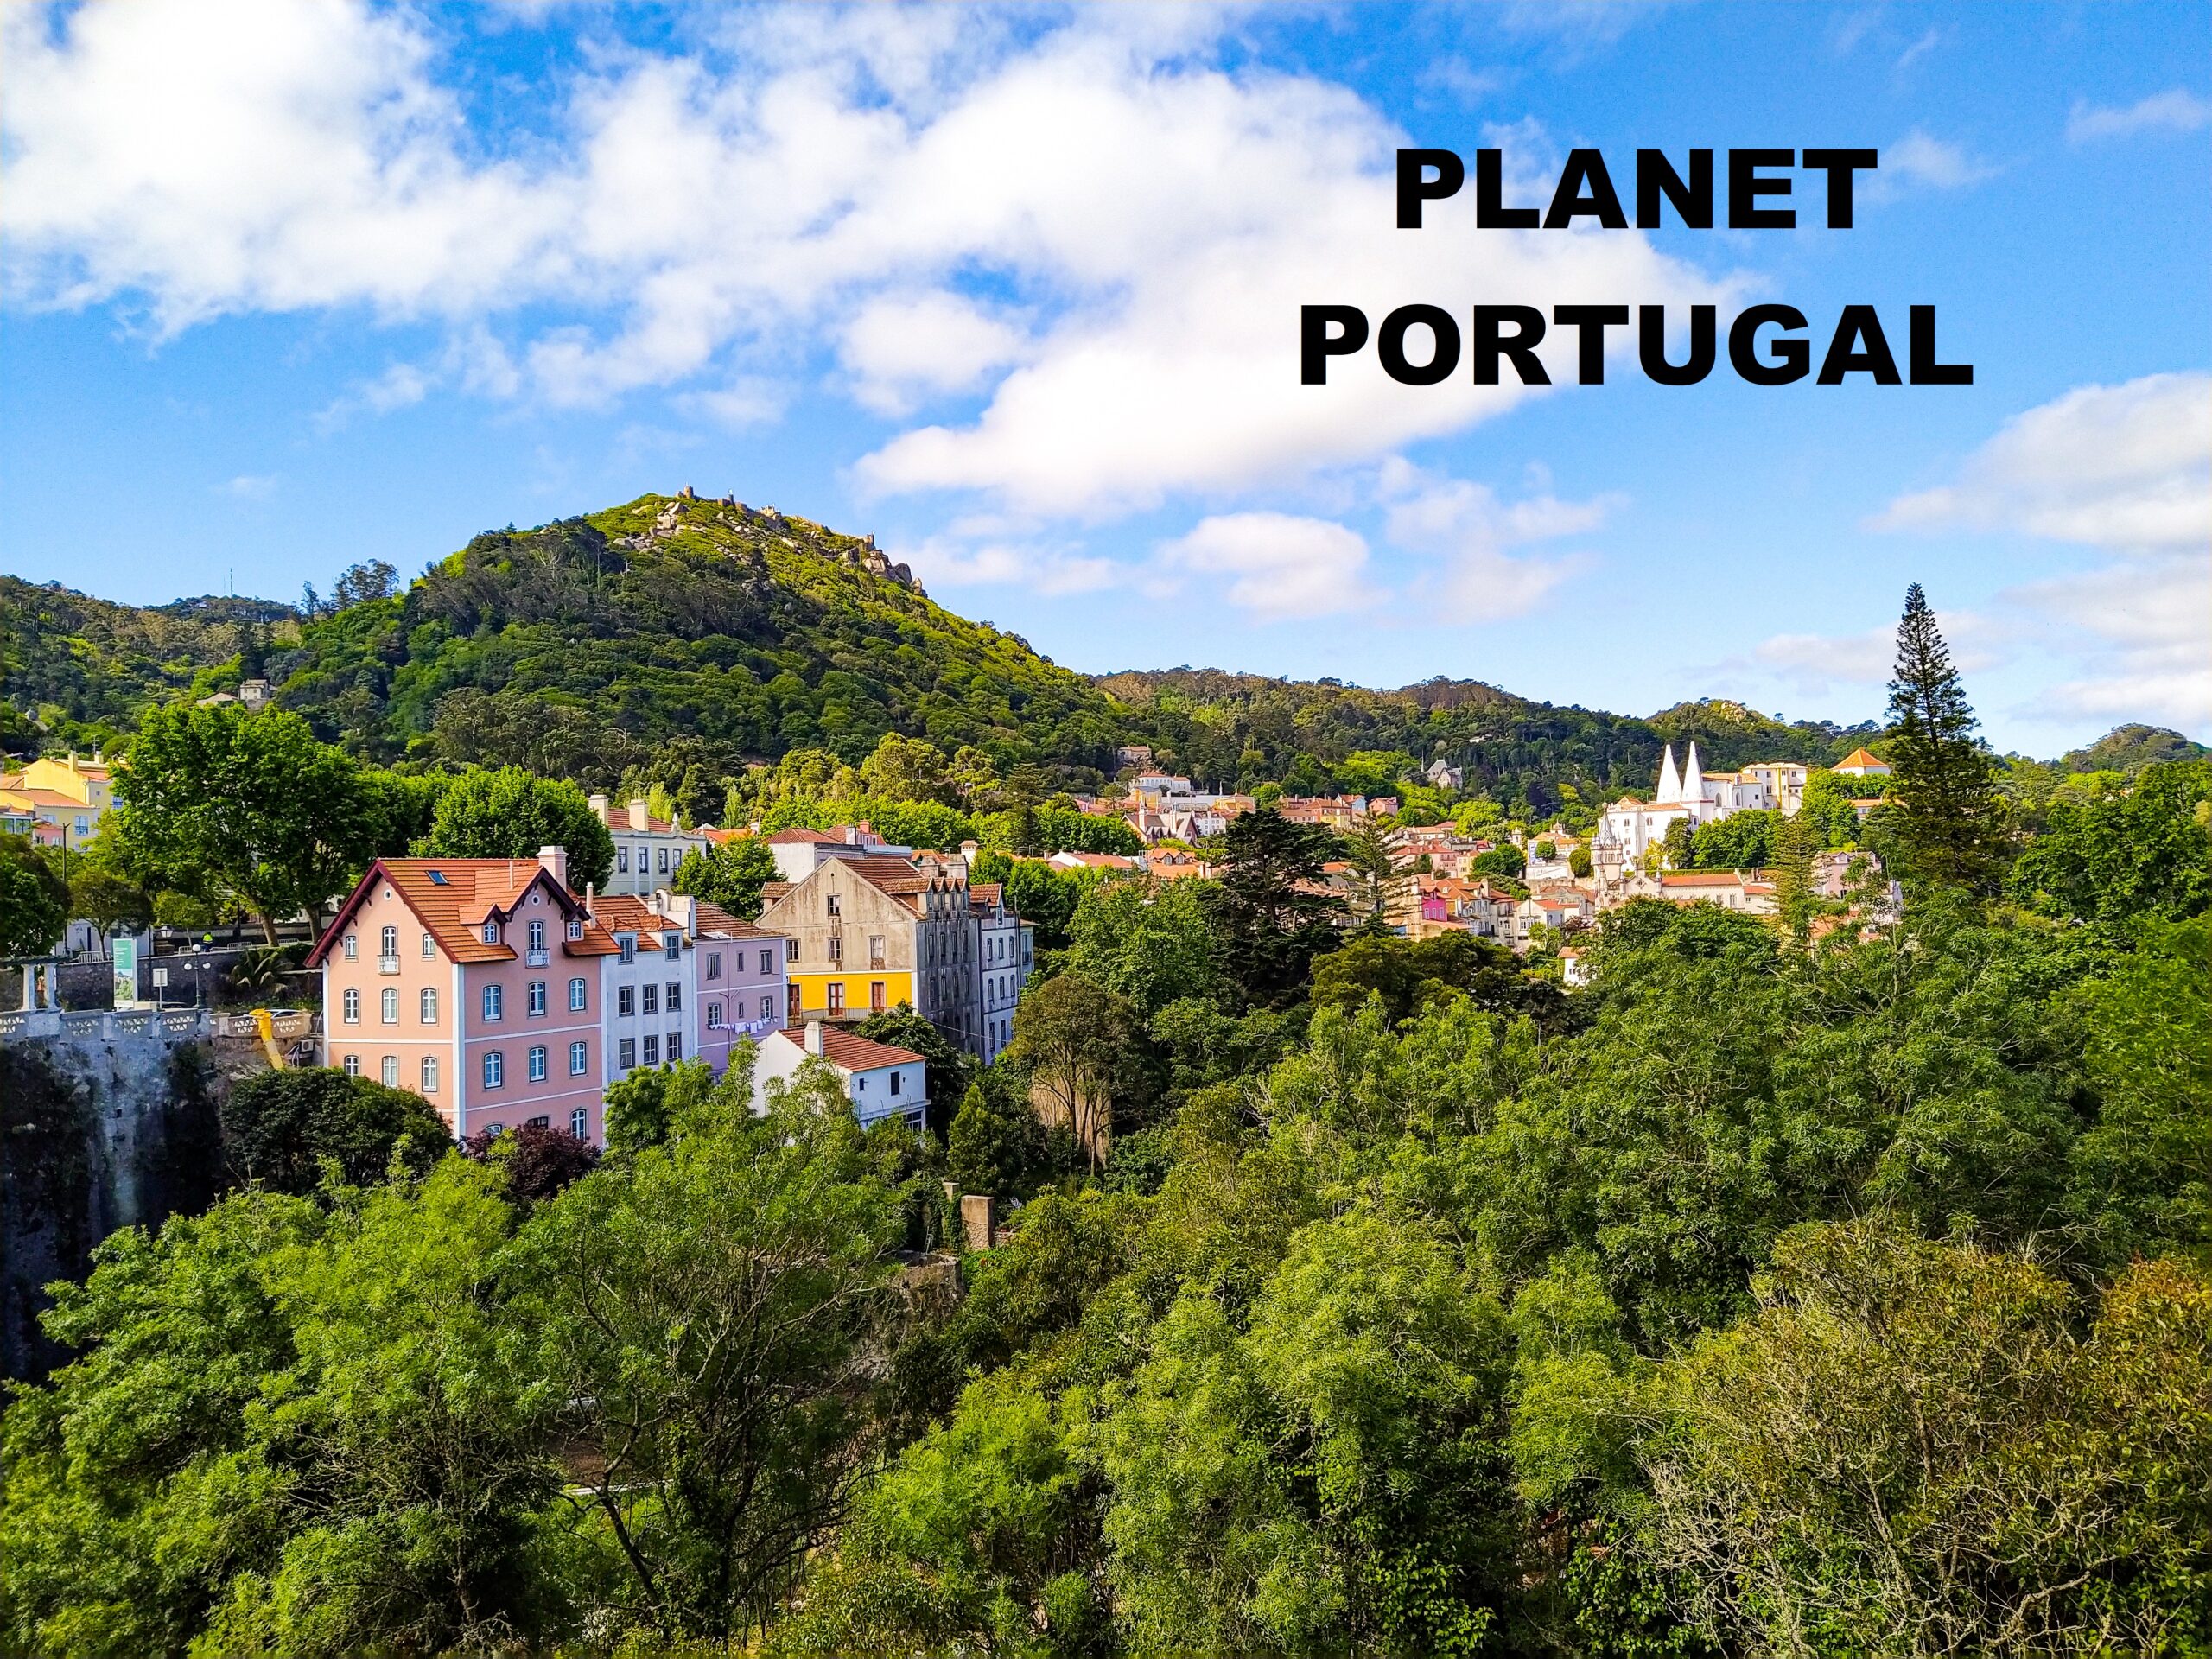 Planet Portugal